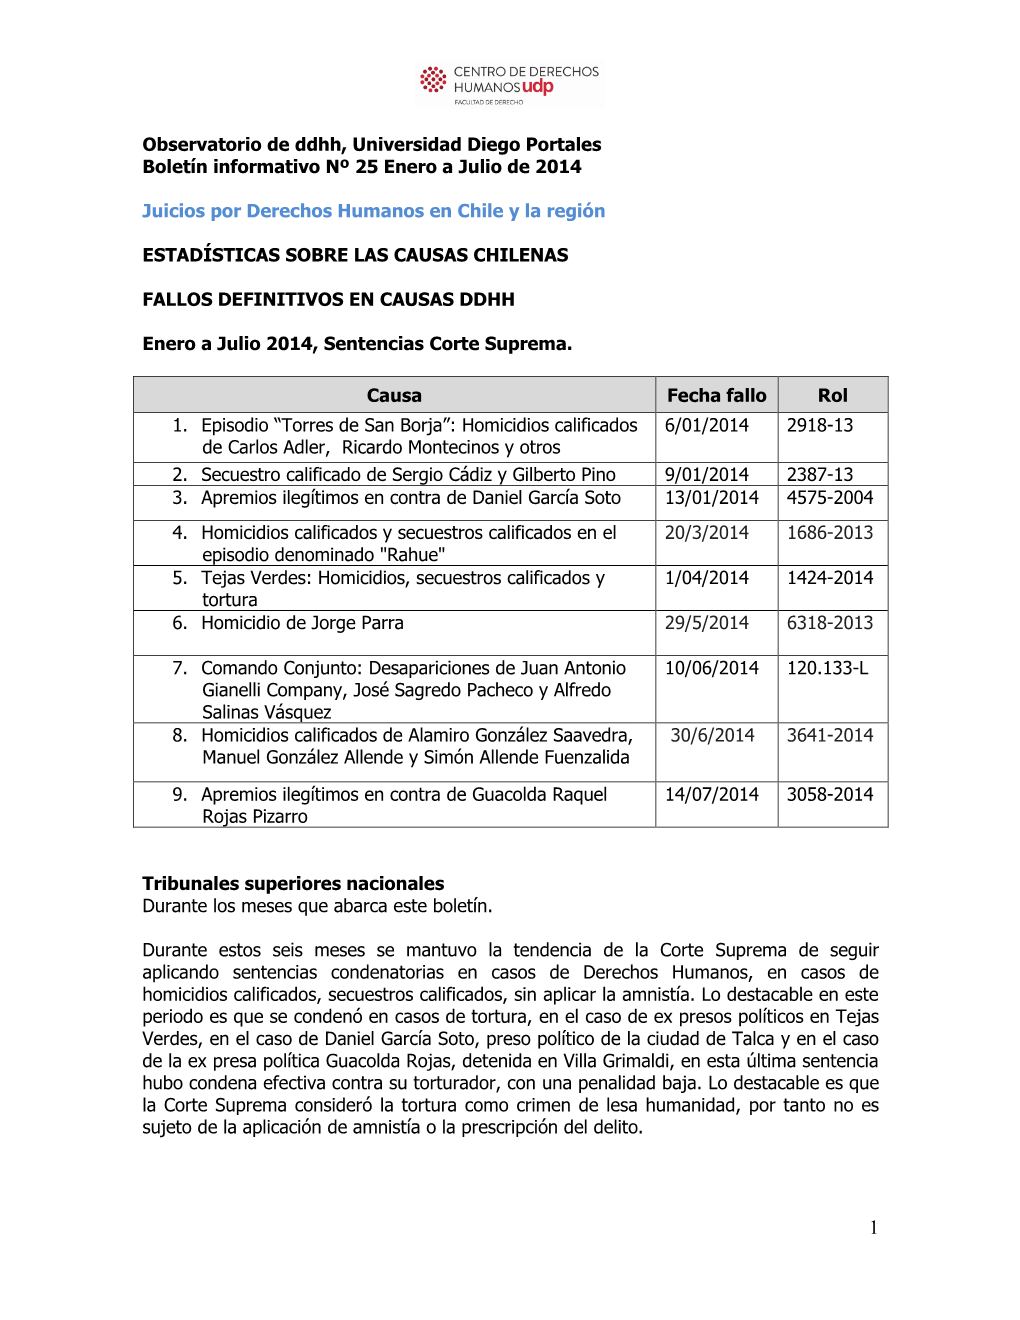 Versidad Diego Portales Boletín Informativo Nº 25 Enero a Julio De 2014